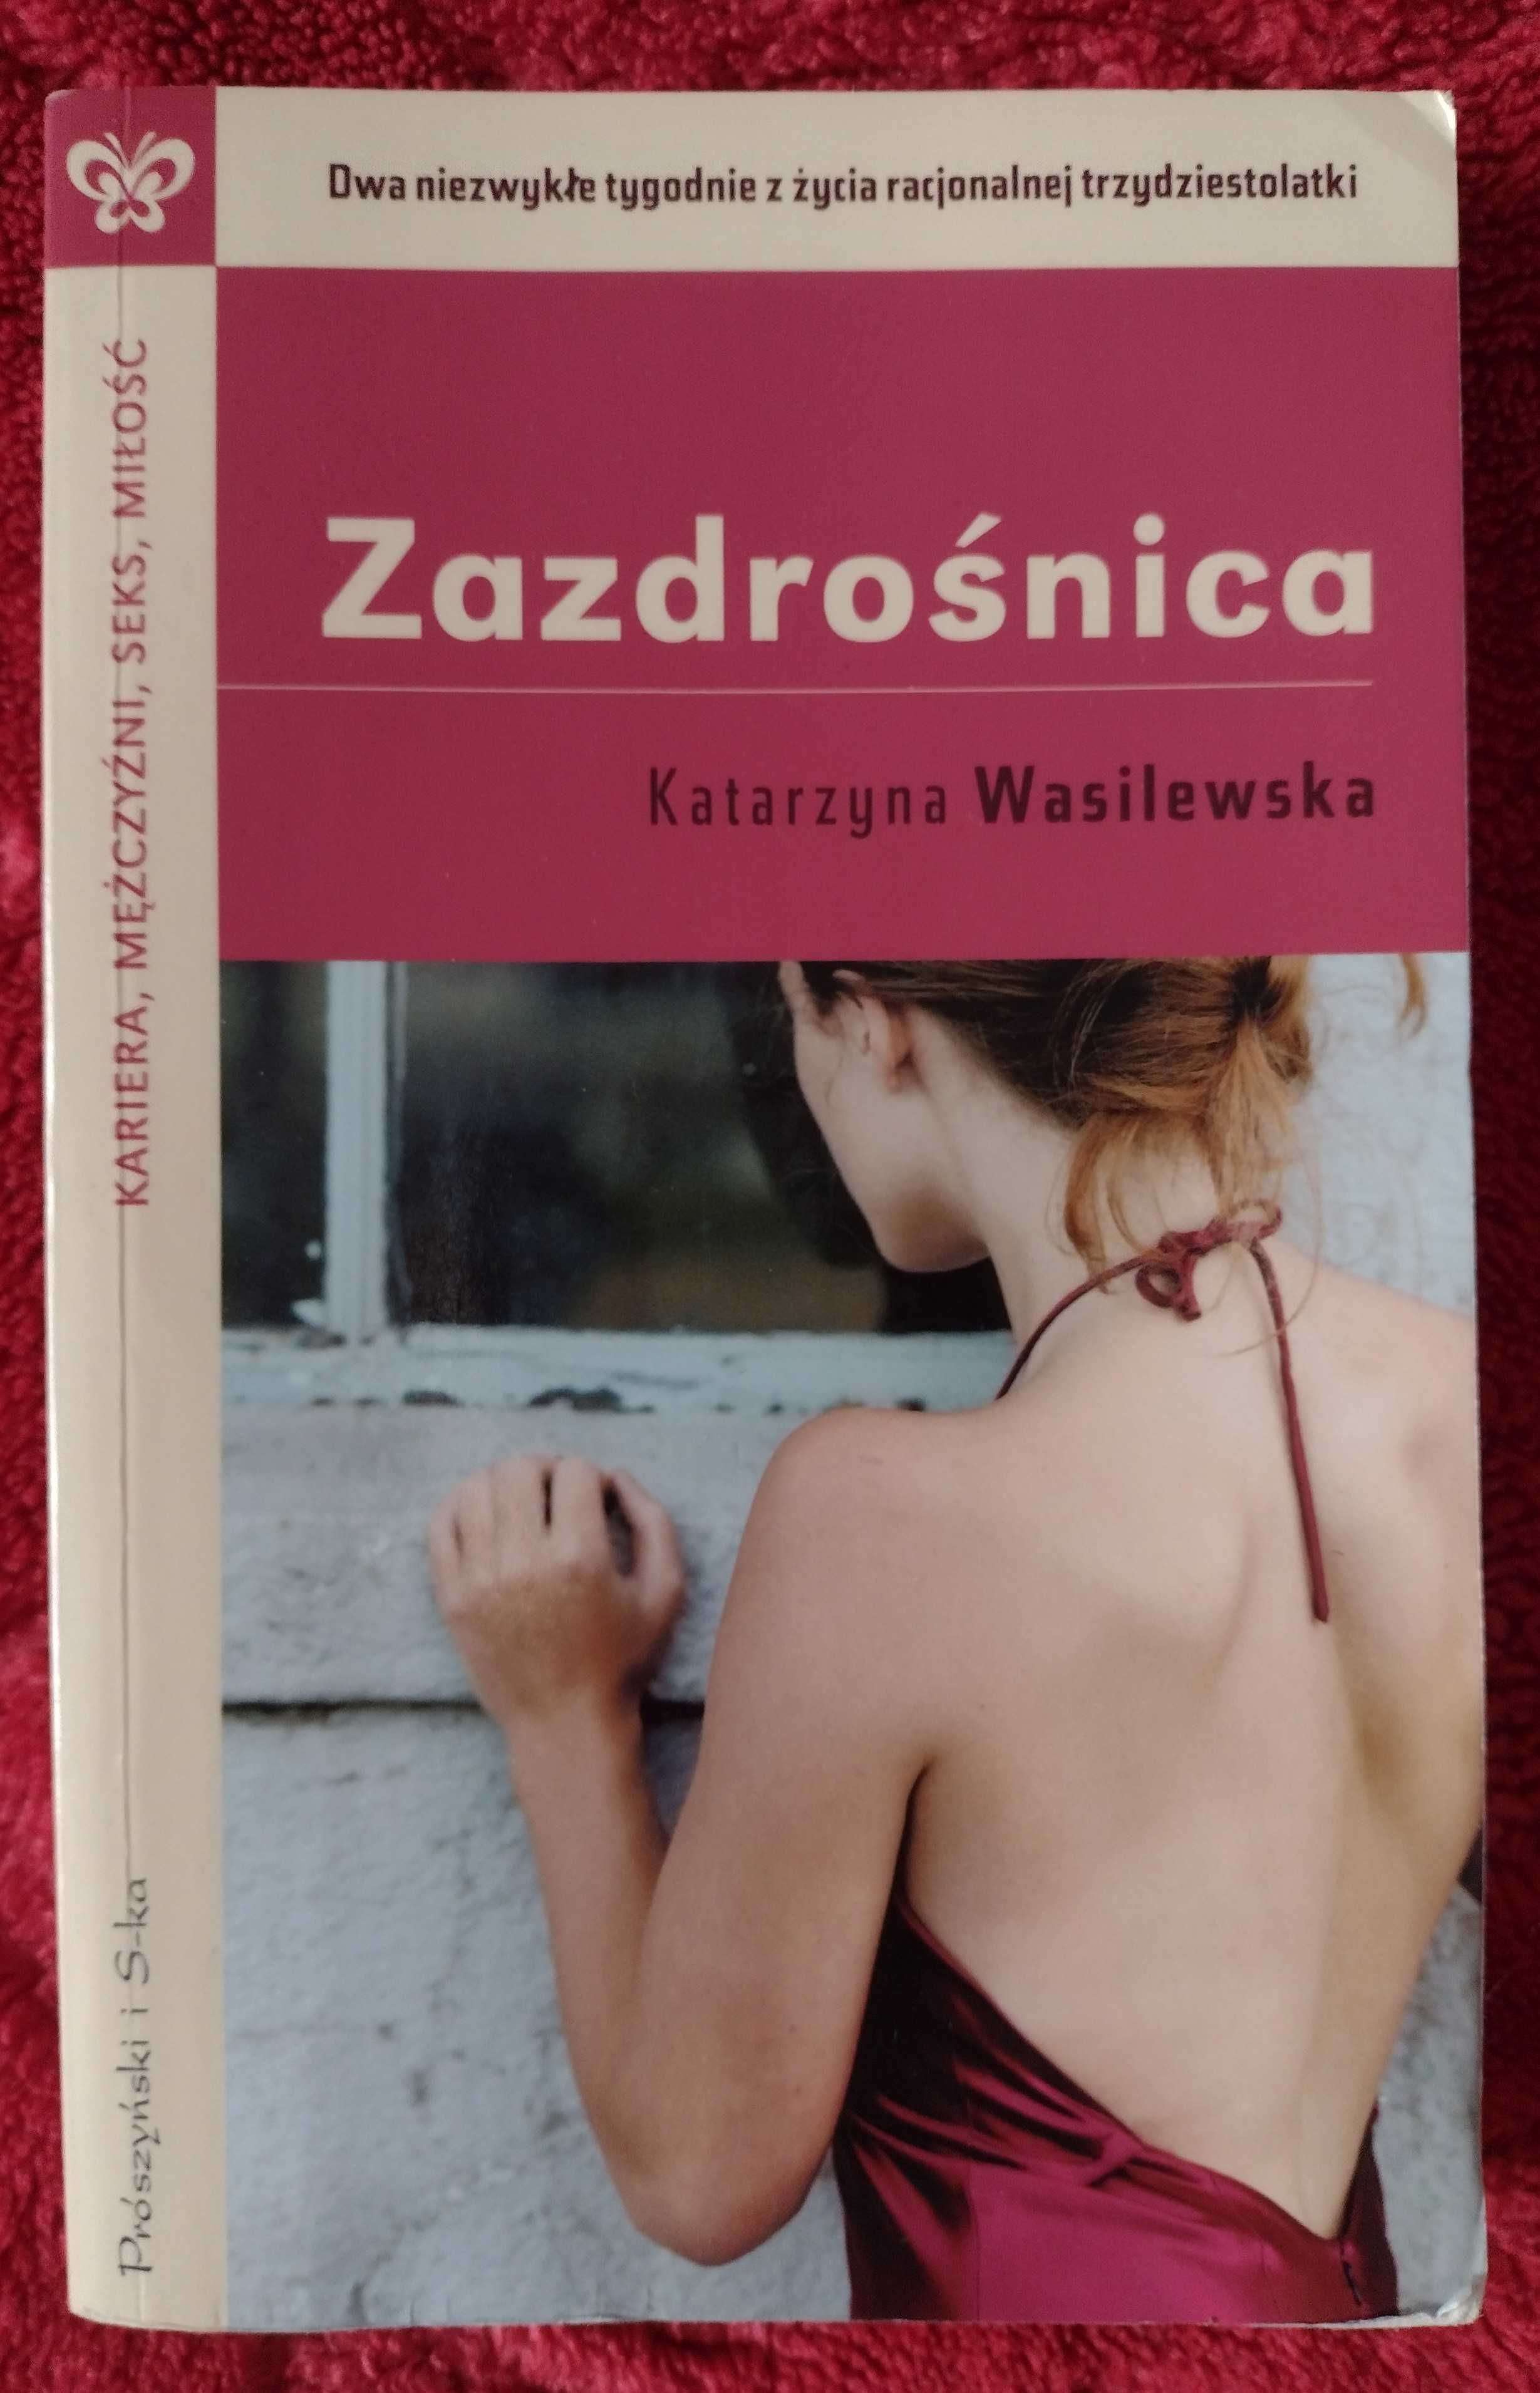 Zazdrośnica - Katarzyna Wasilewska